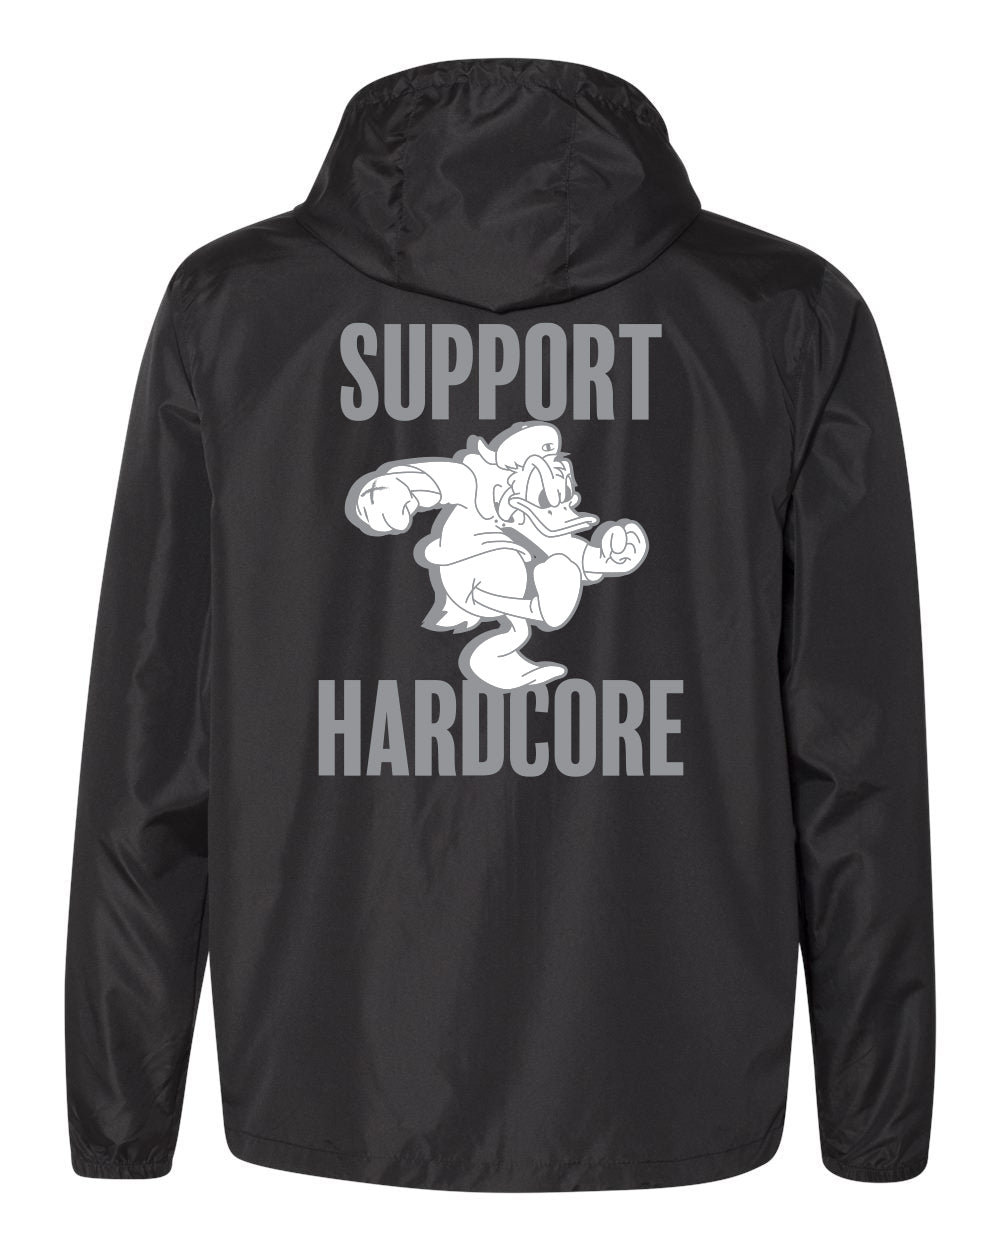 Windbreaker (Hooded) - Support Hardcore